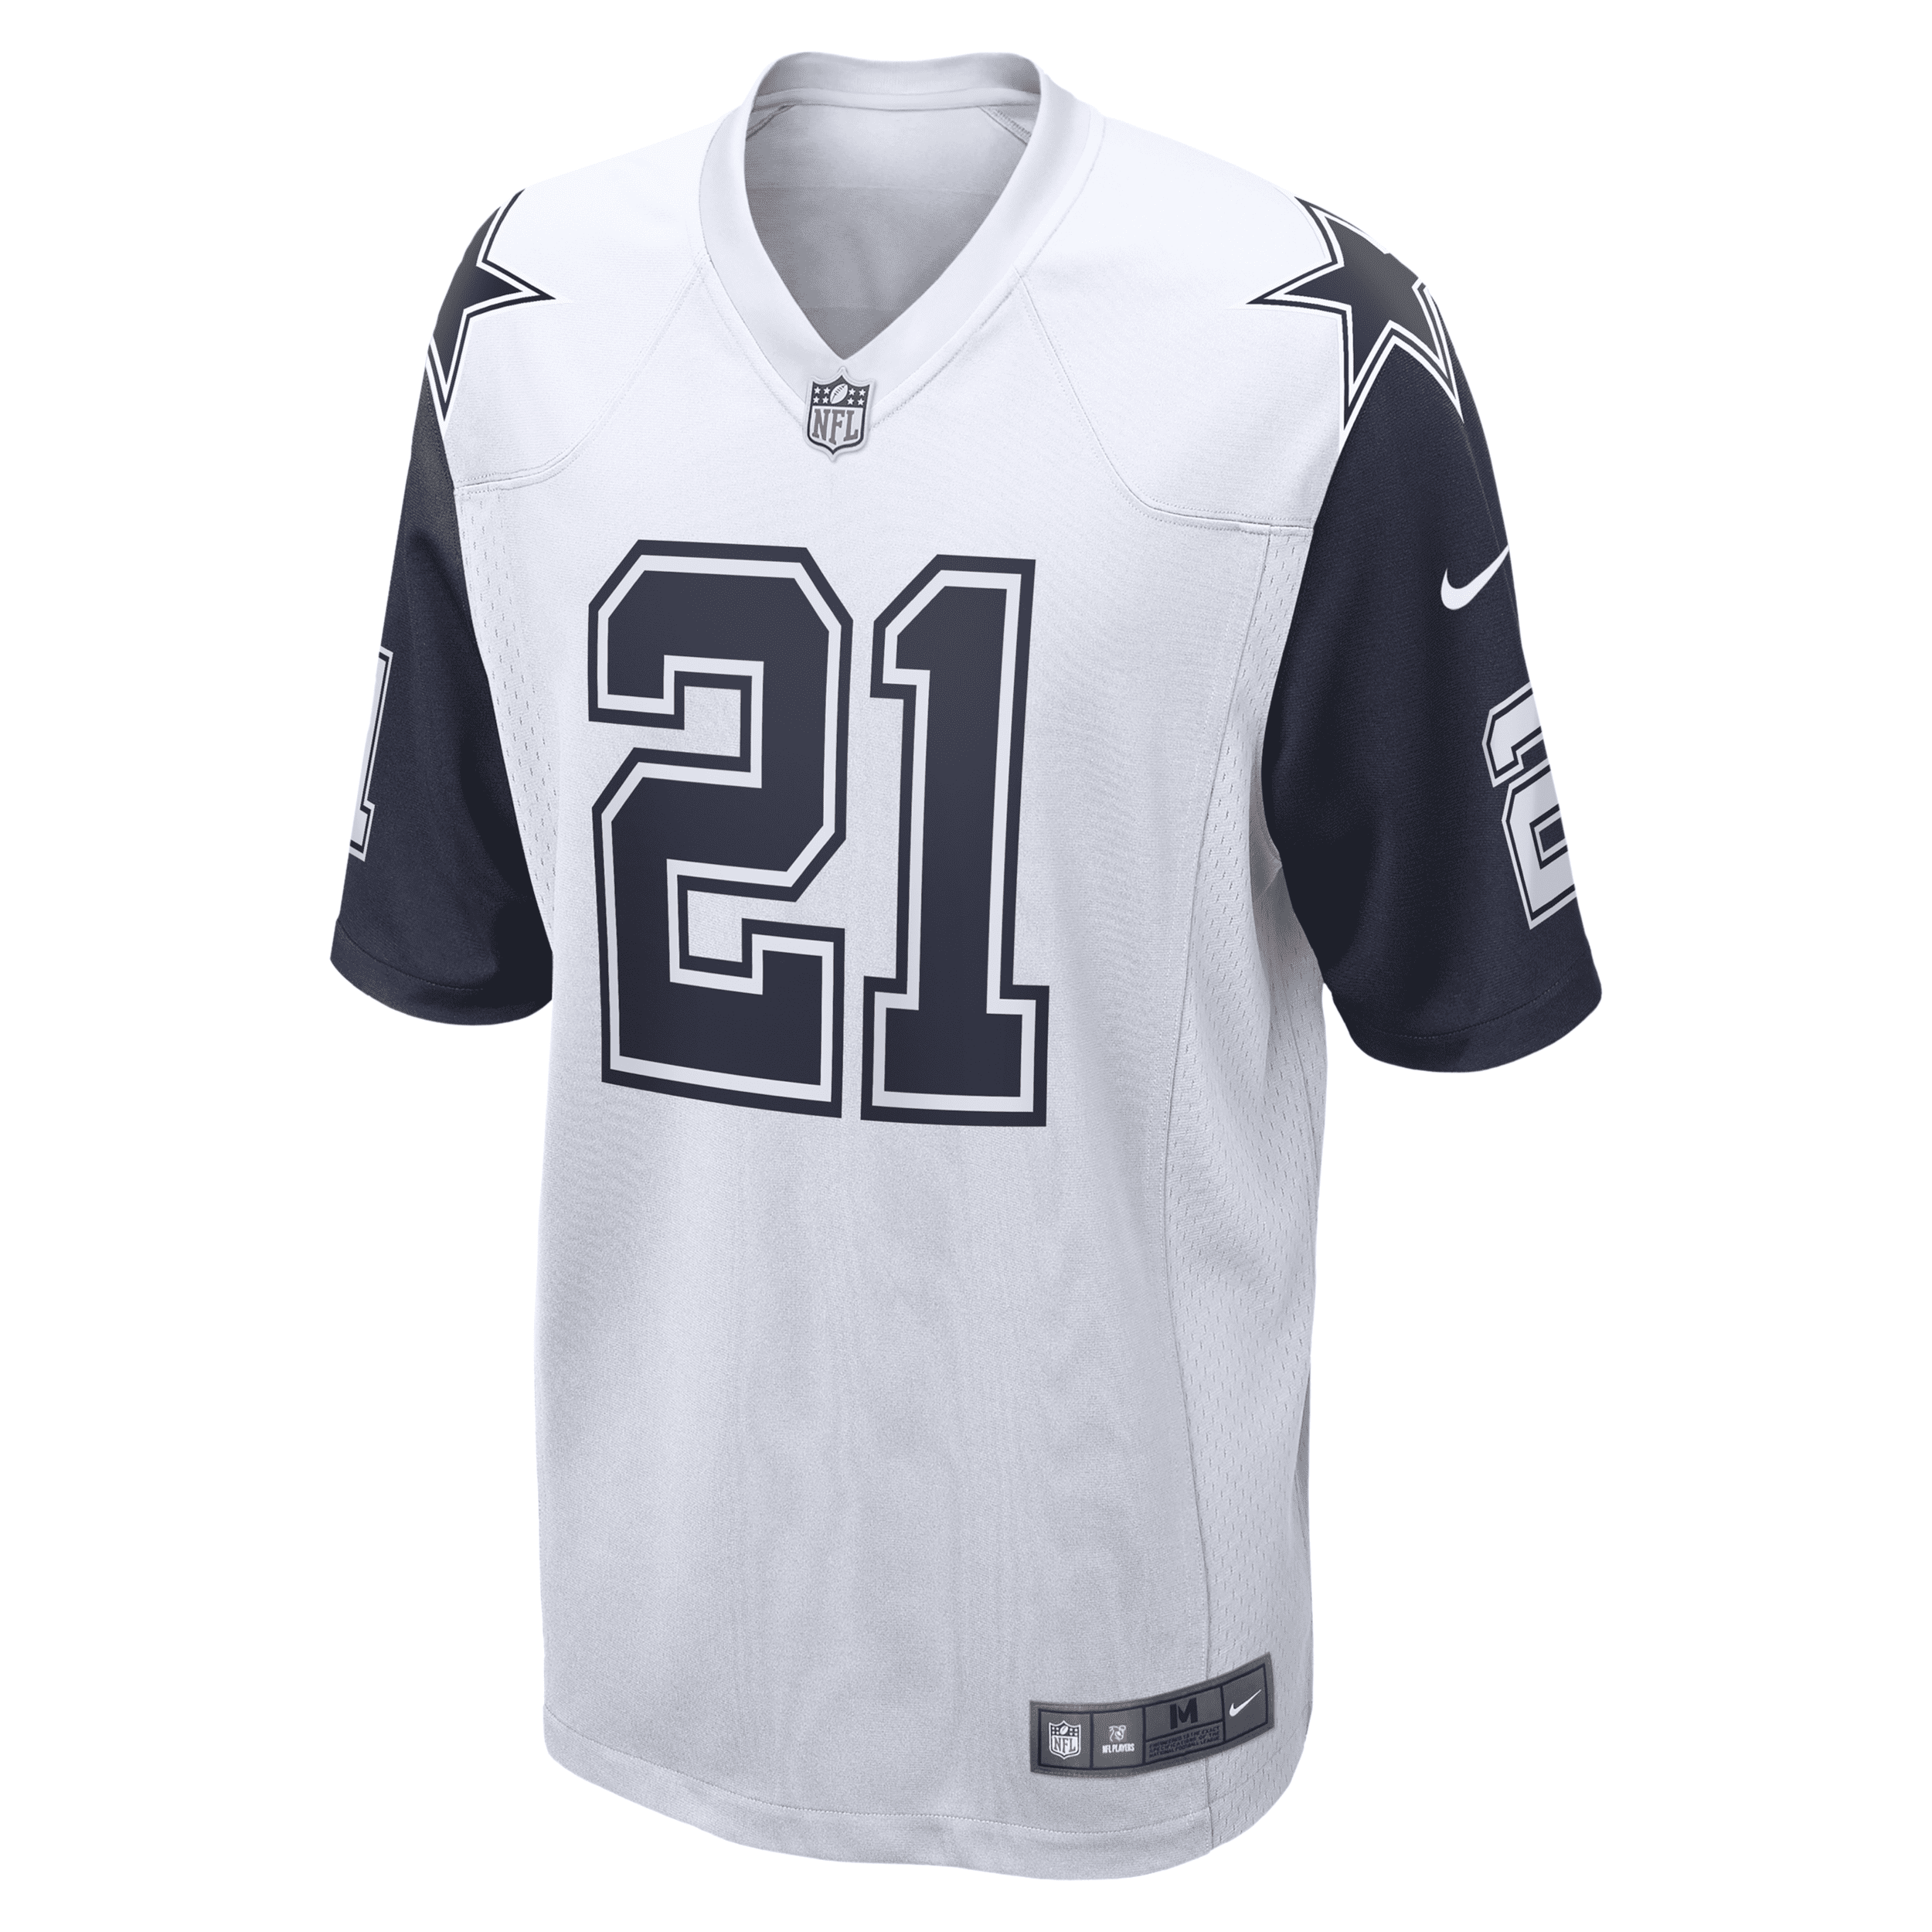 Shop Nike Men's Nfl Dallas Cowboys (ezekiel Elliott) Game Football Jersey In White